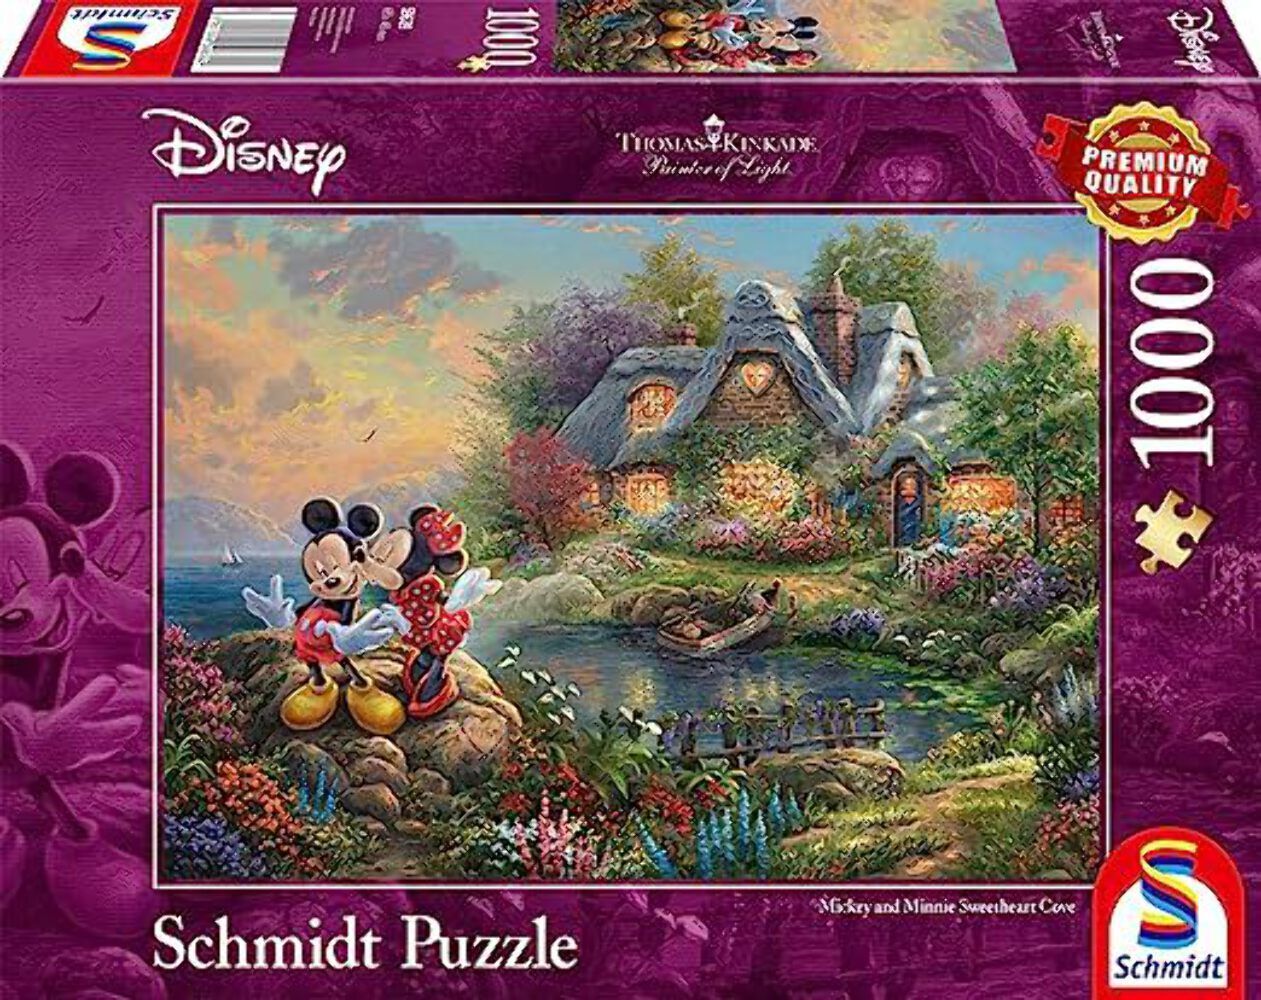 Schmidt 59639 Thomas Kinkade Disney Mickey Mouse Jigsaw Puzzle